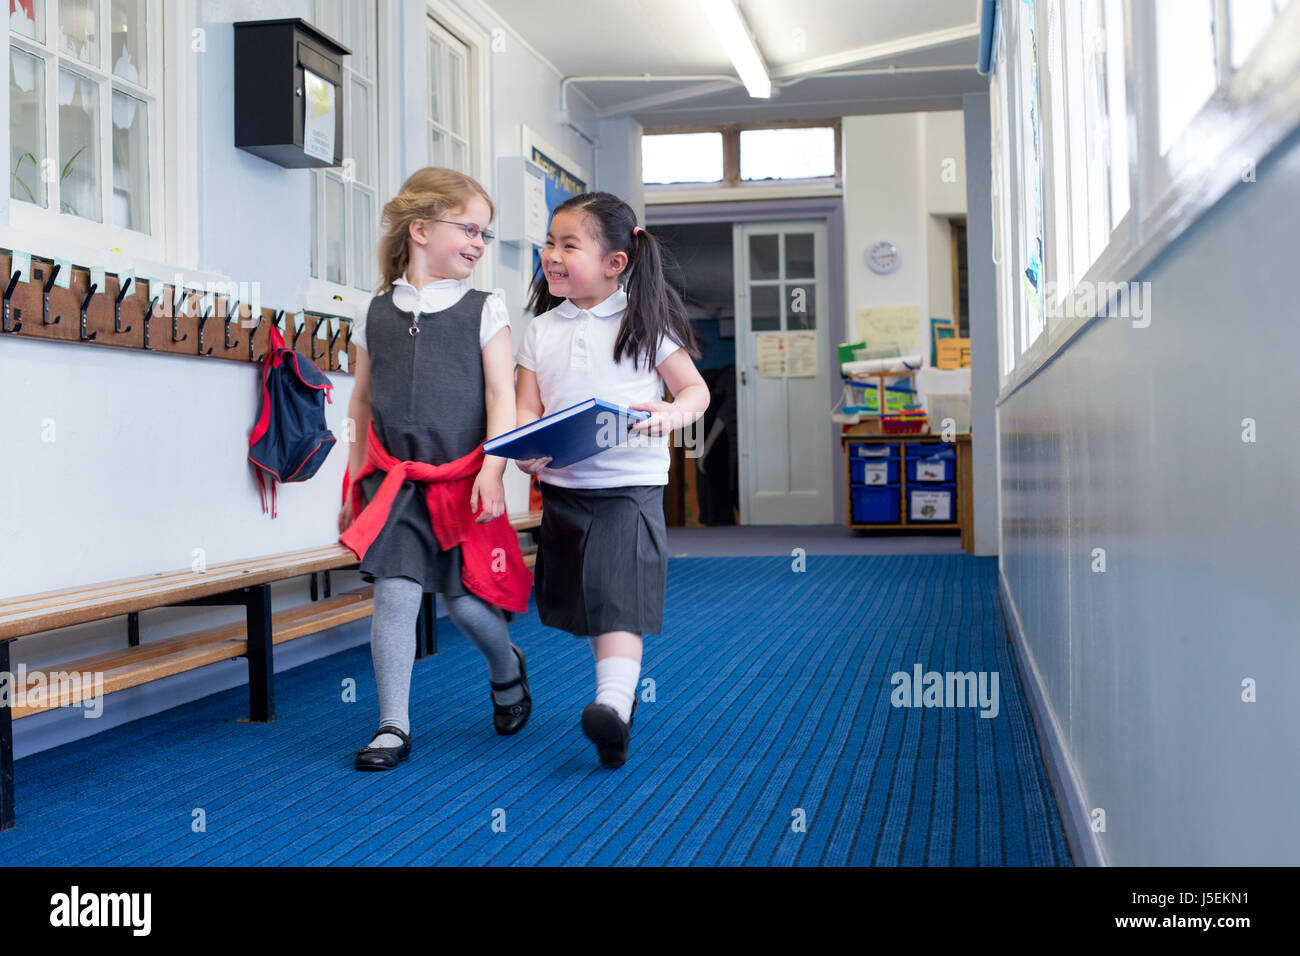 Zwei weibliche Kindergarten Studenten gemeinsam gehen hinunter den Korridor. Man hält ein Buch und sie sind beide lachen im Gespräch. Stockfoto